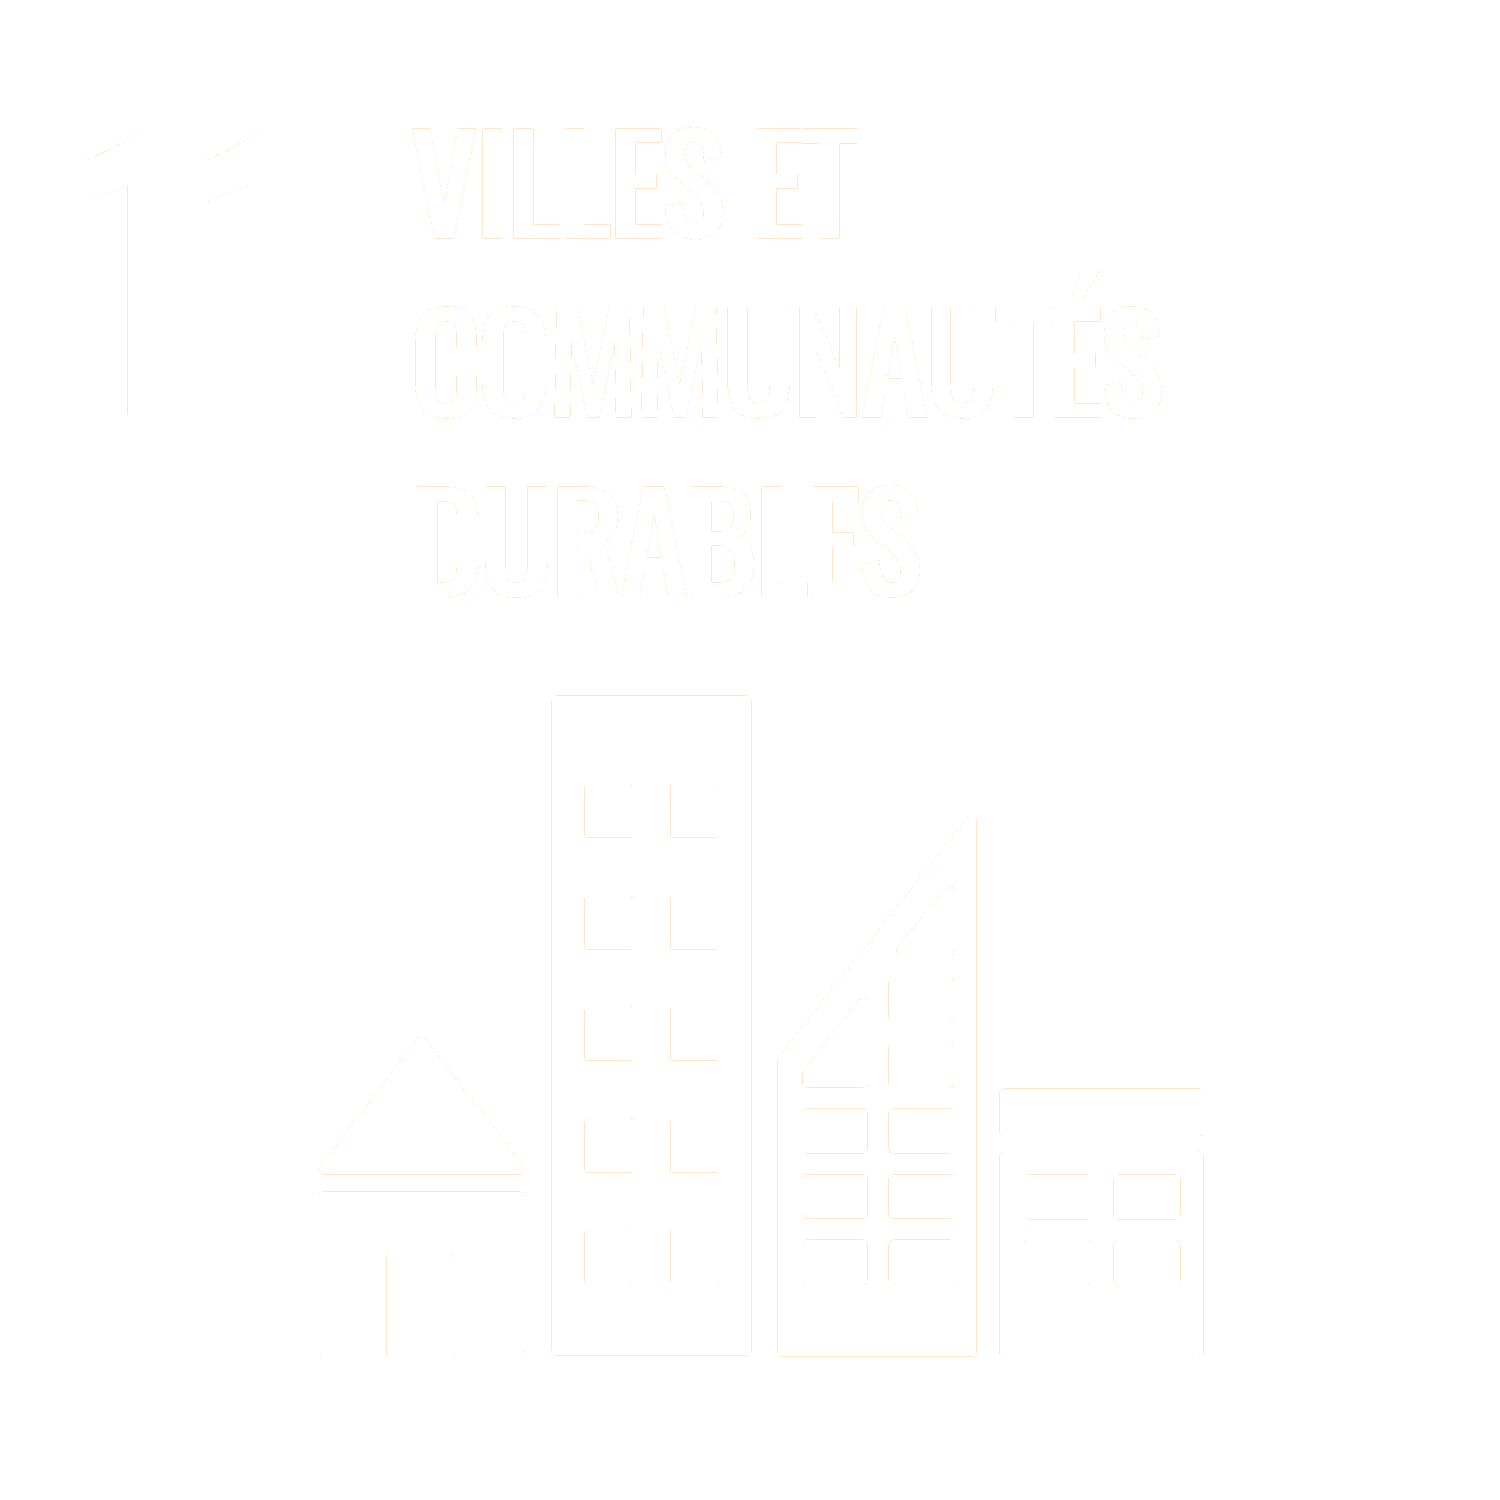 Villes et communautés durables